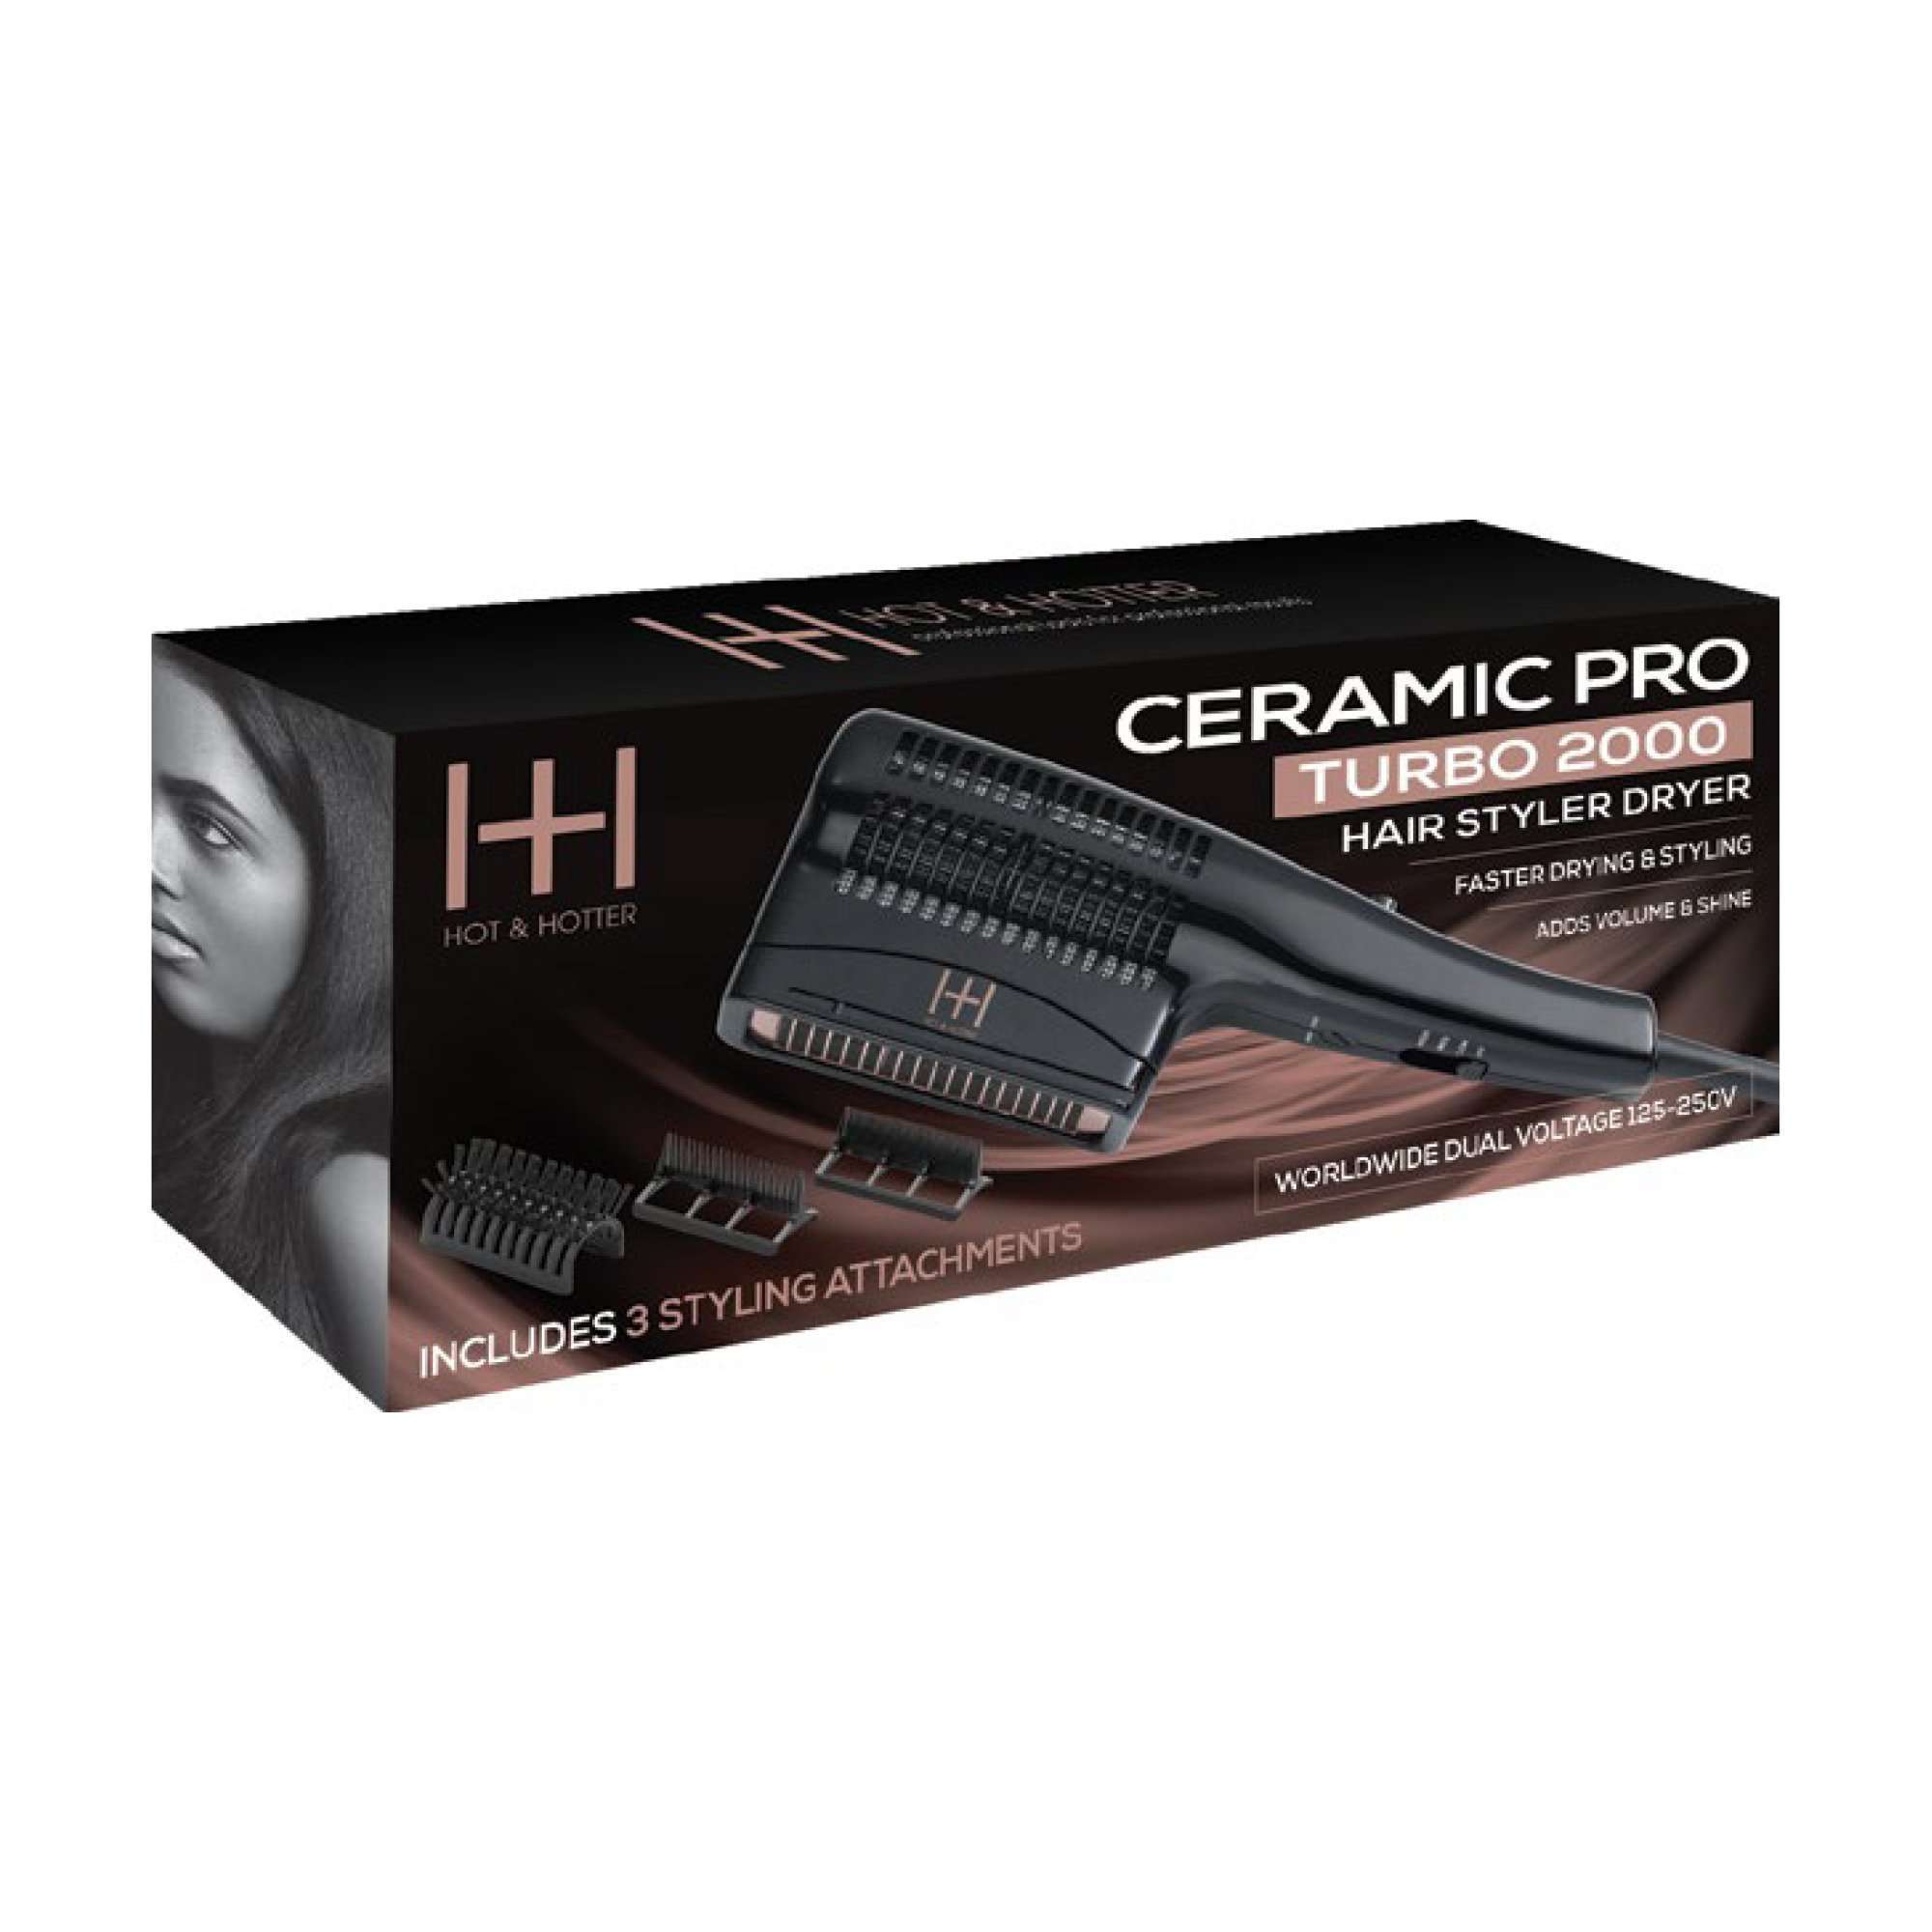 Hot & Hotter Ceramic Pro Turbo 2000 Hair Styler Dryer